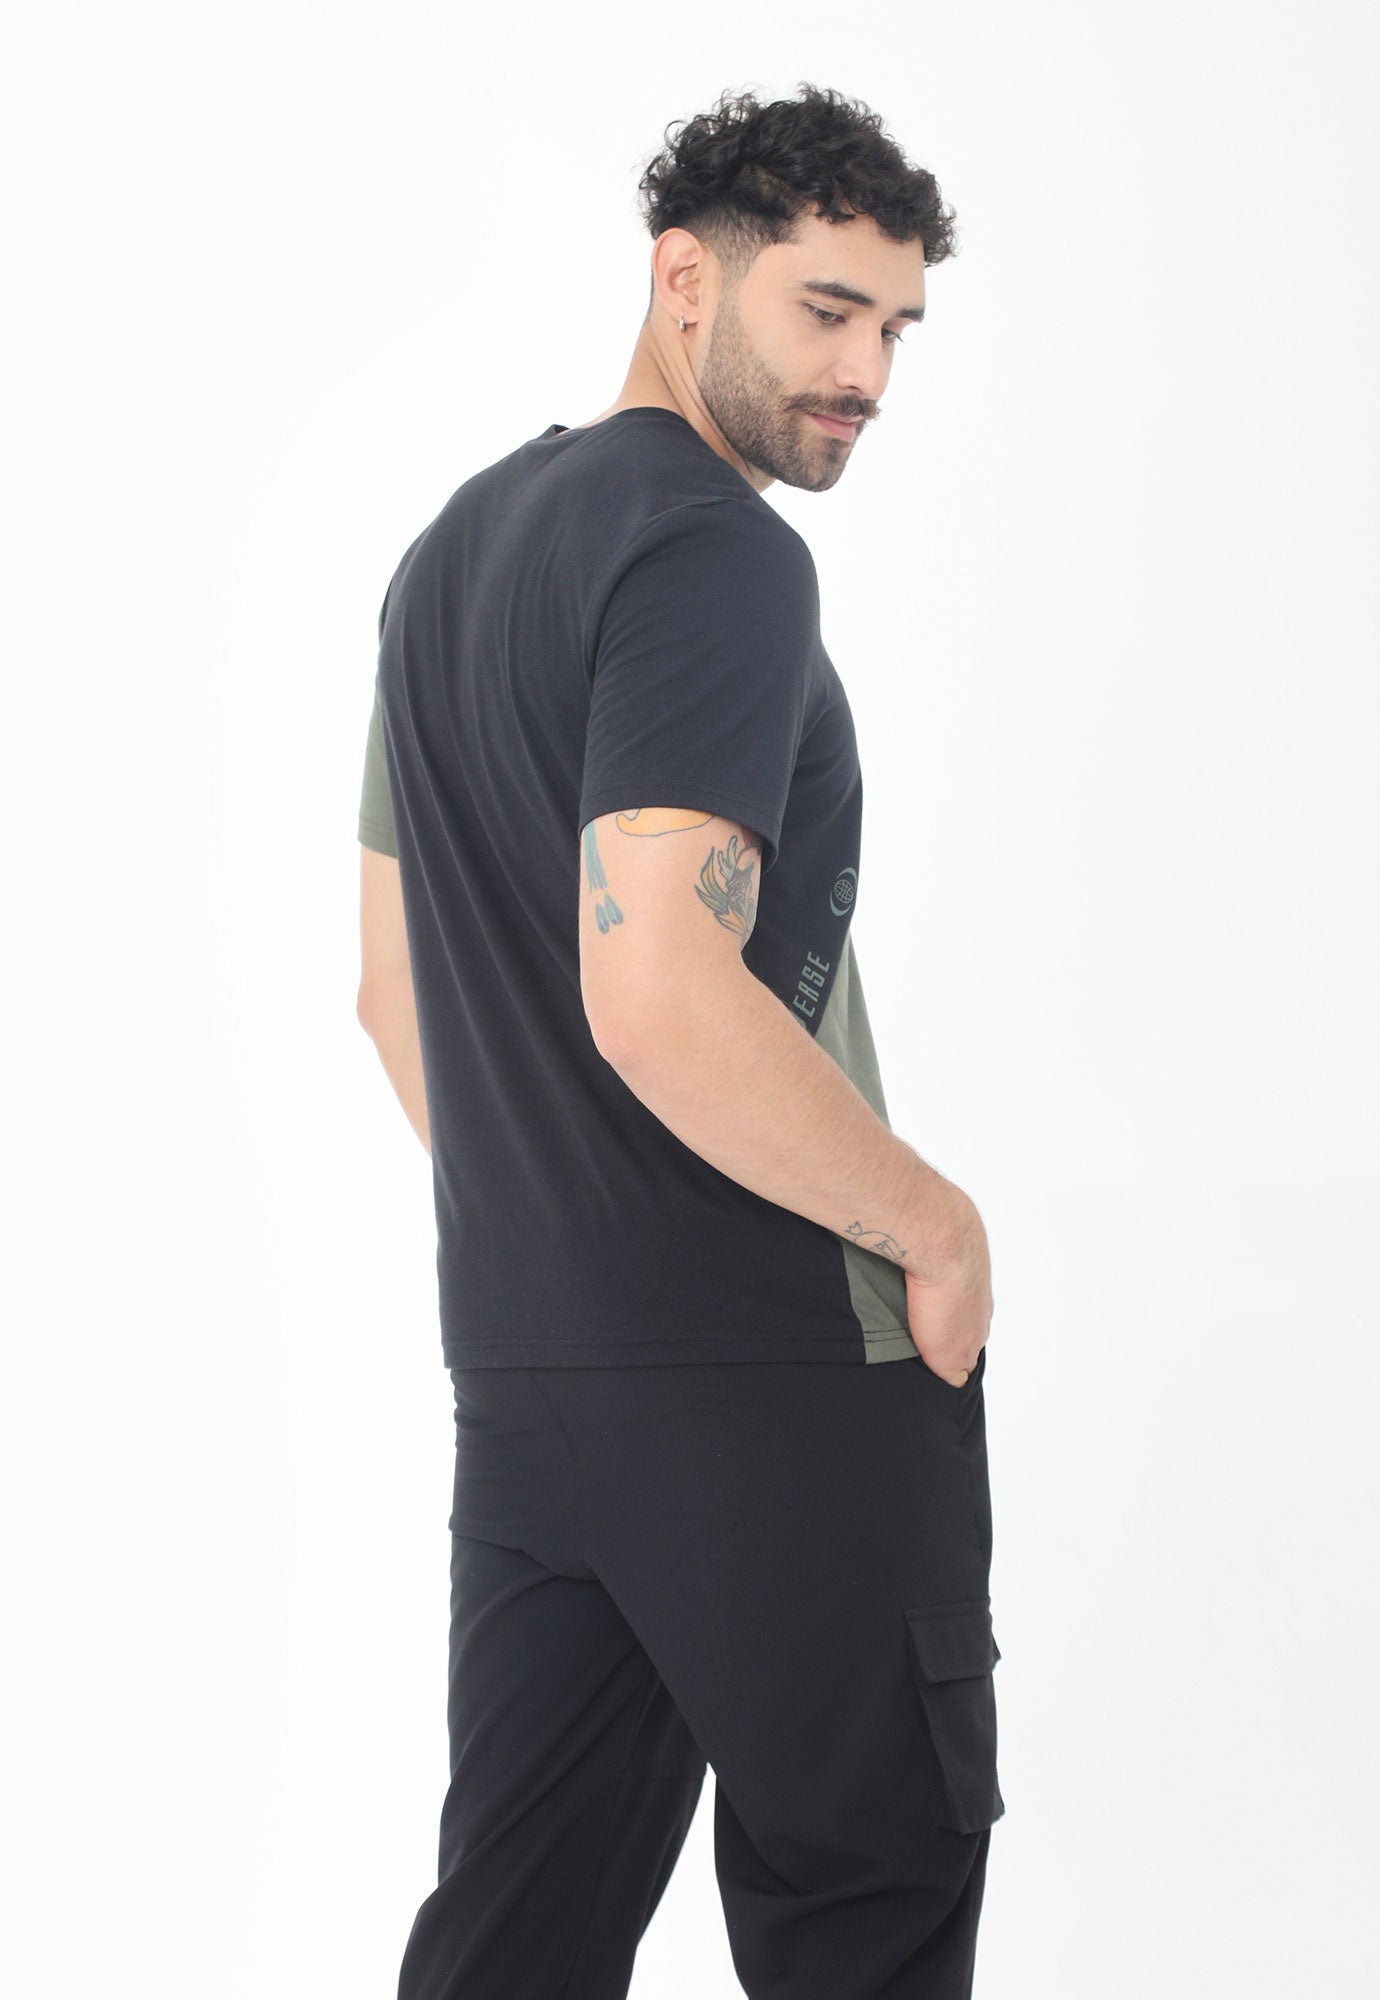 Camiseta negra en bloques diagonales en contraste, cuello redondo y manga corta para hombre